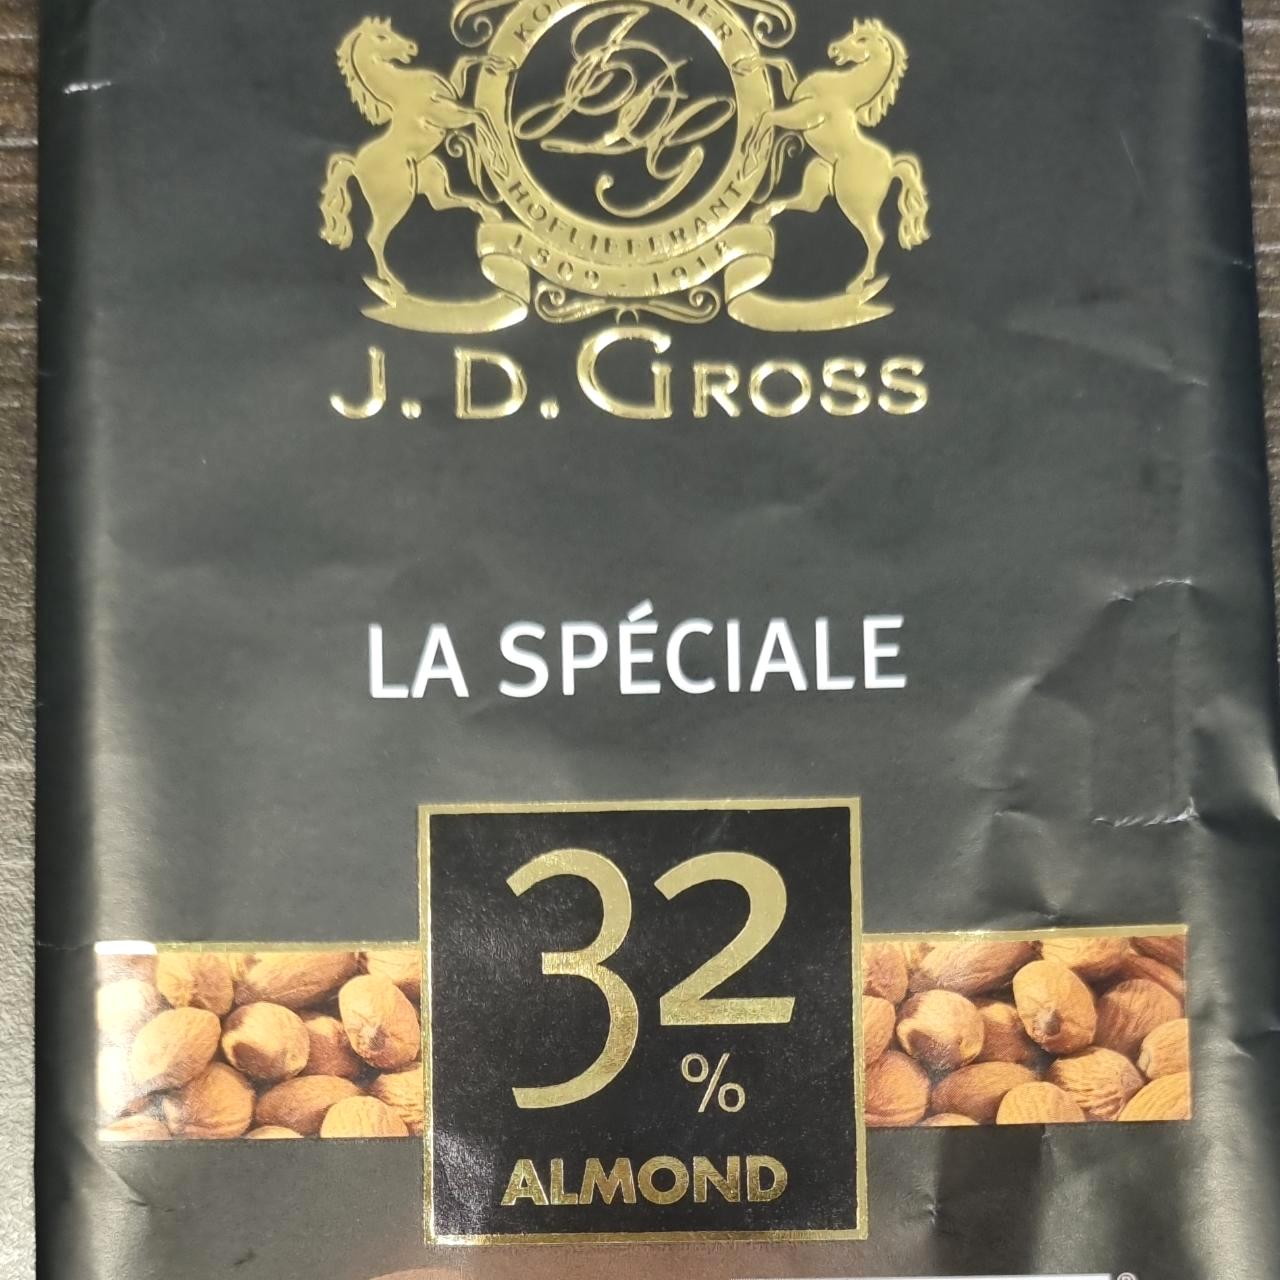 Képek - Csokoládé La speciále 32% Almond J.D.GROSS